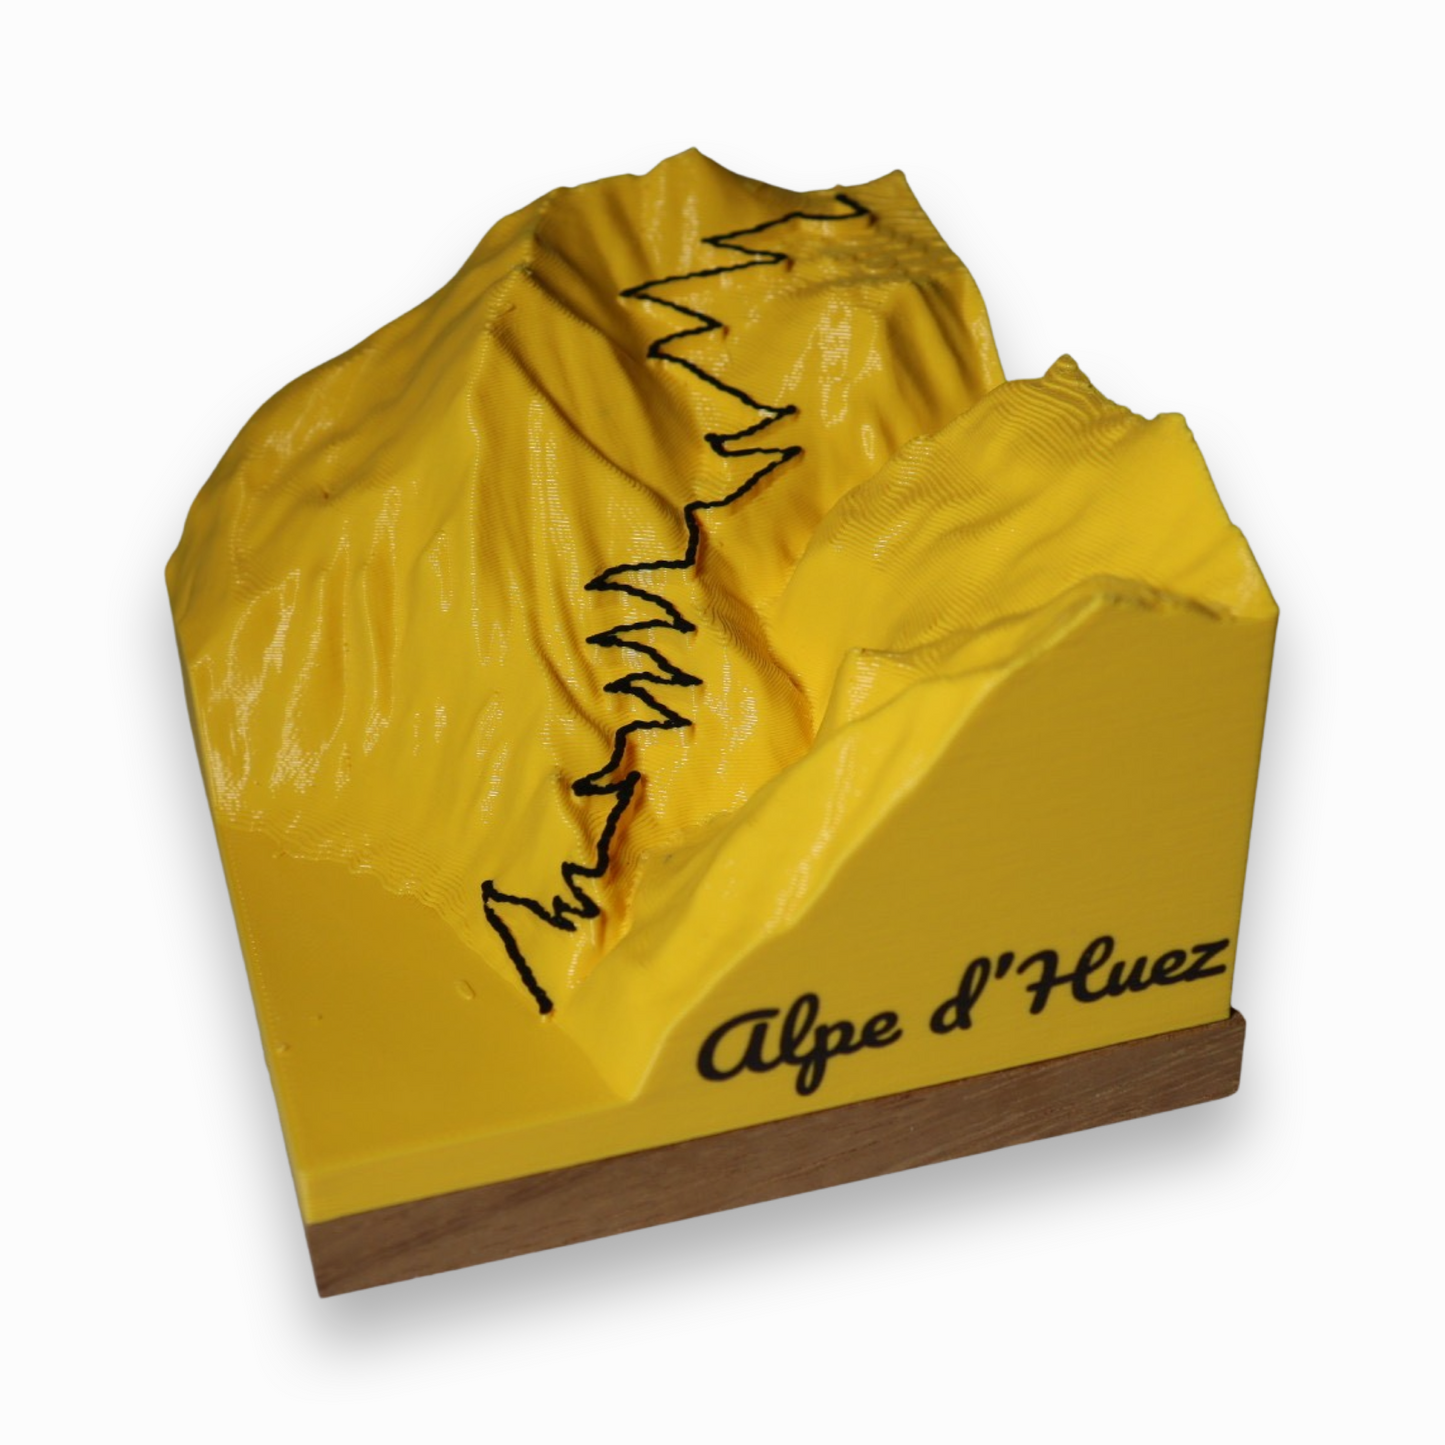 Alpe d'Huez, gifts for cyclists, cycling souvenirs, Alpe d'Huez souvenirs